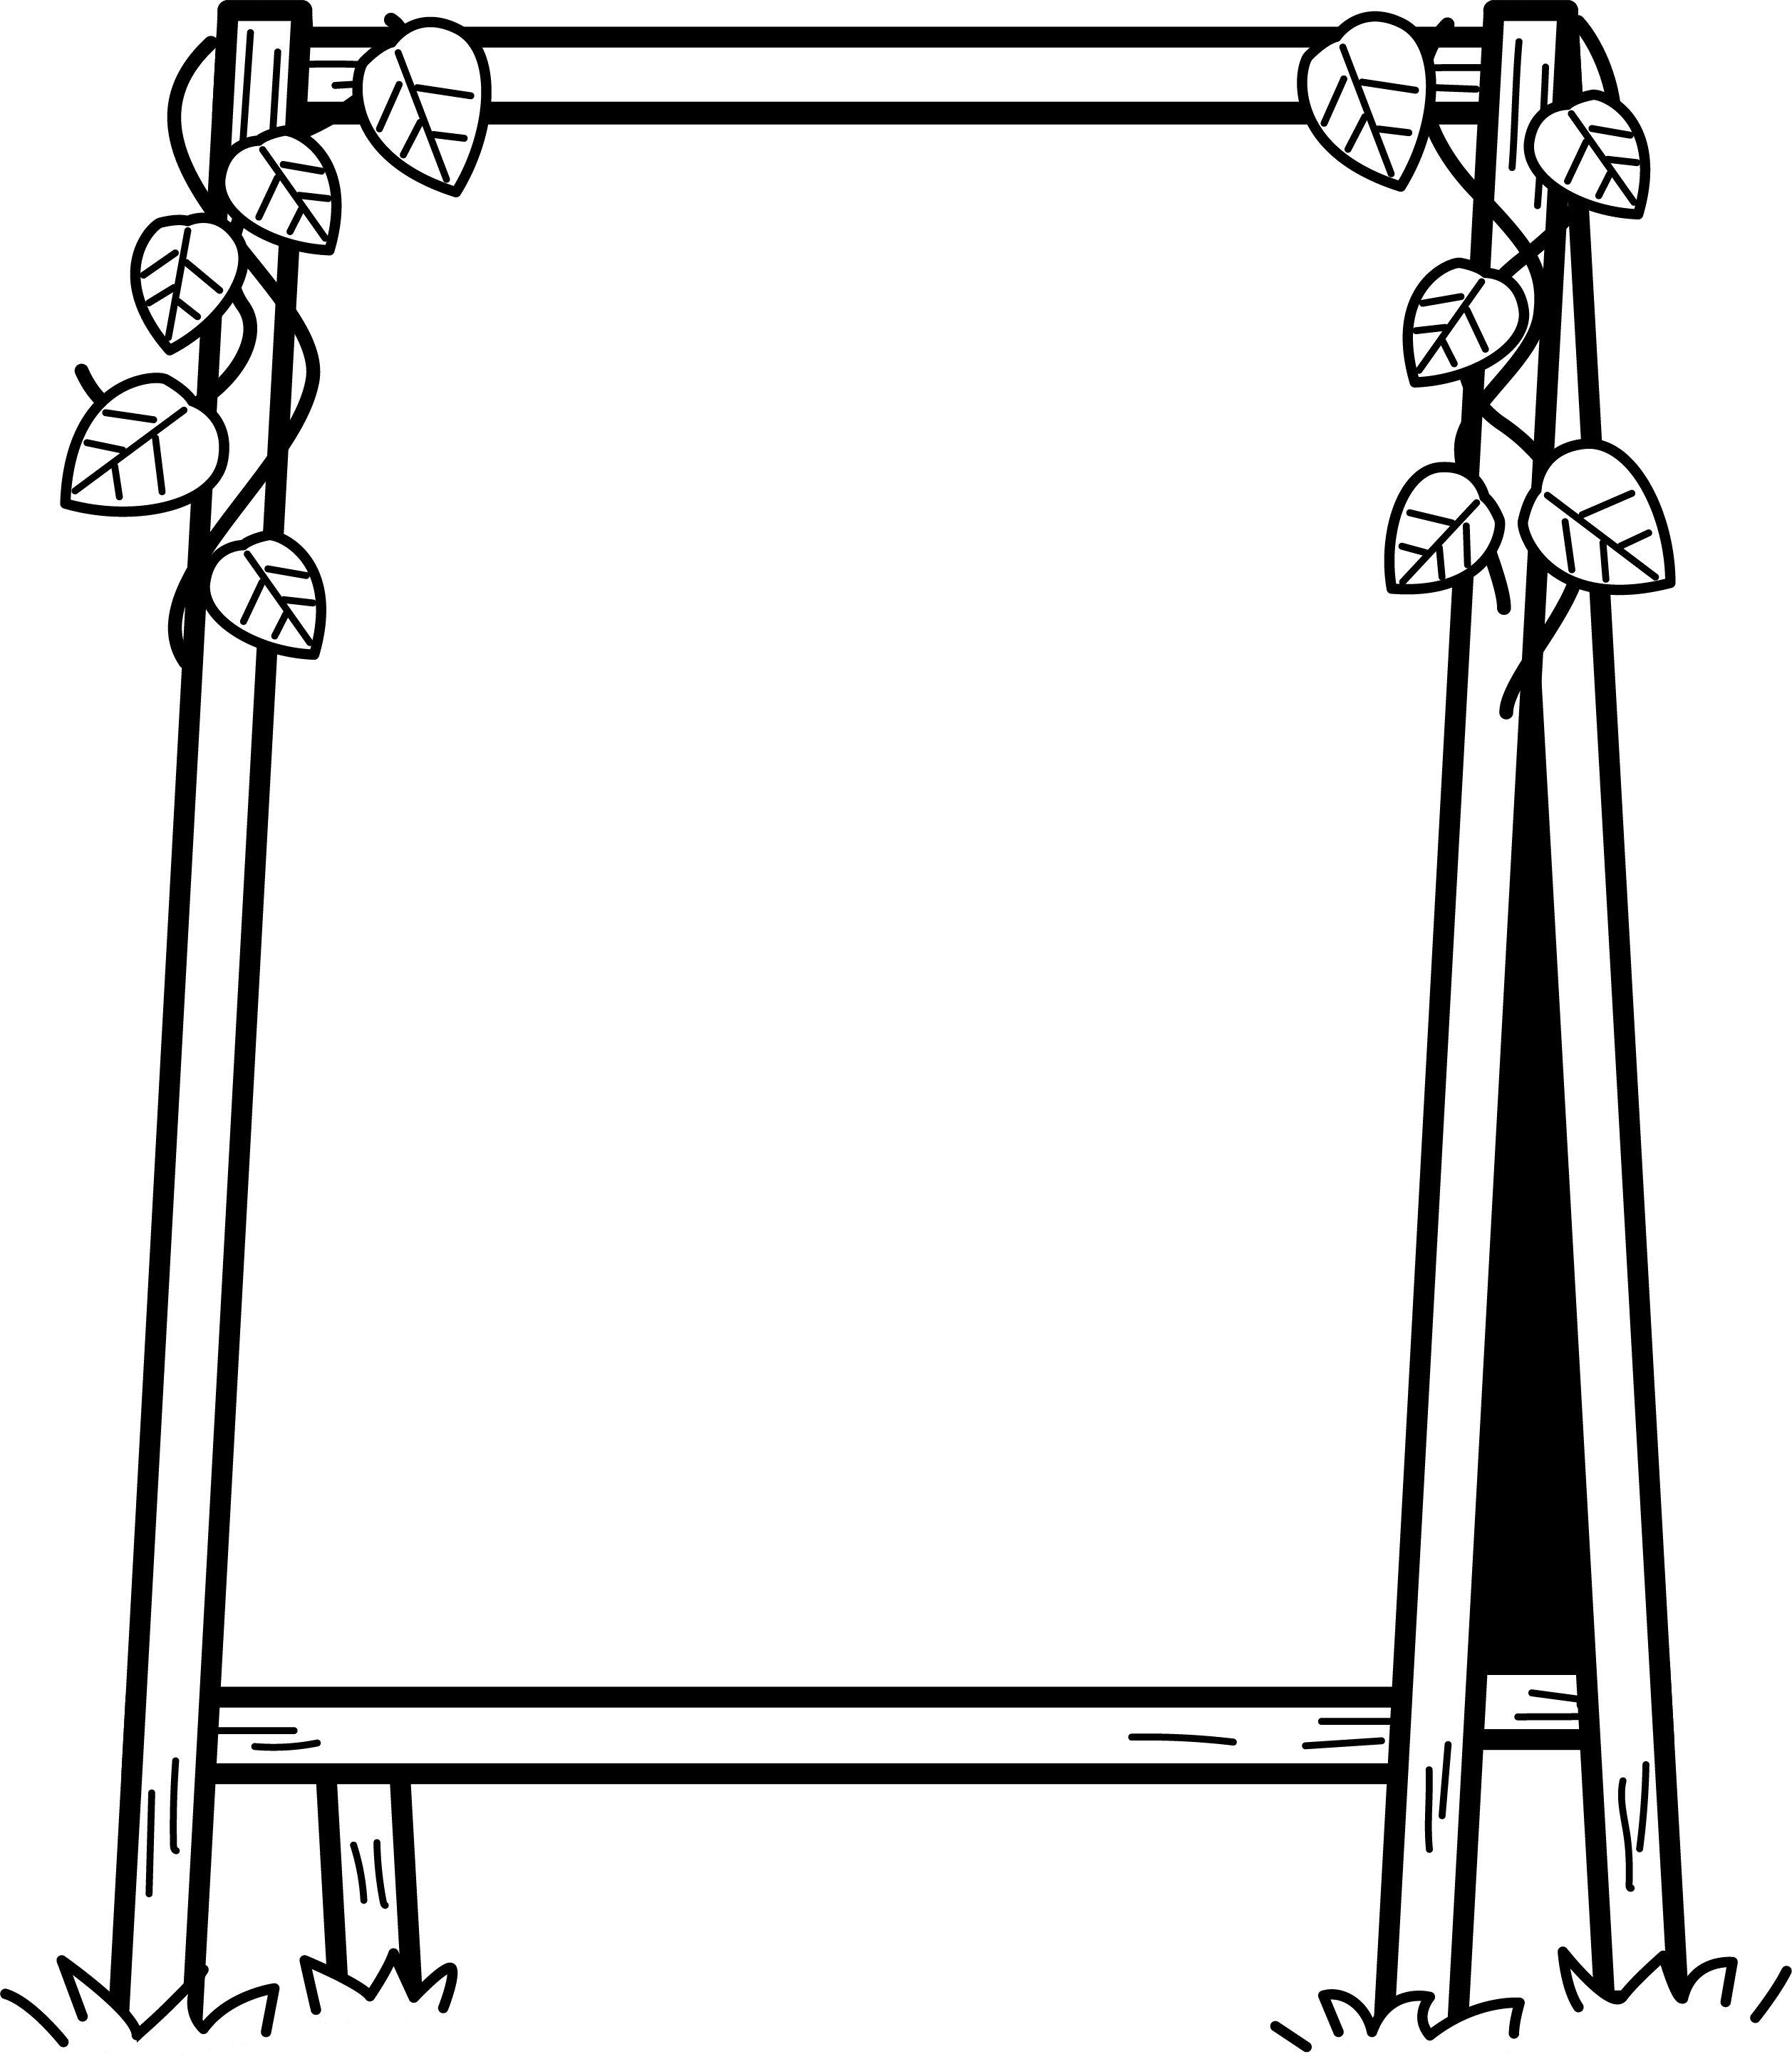 立木招牌和叶子(黑白装饰框)